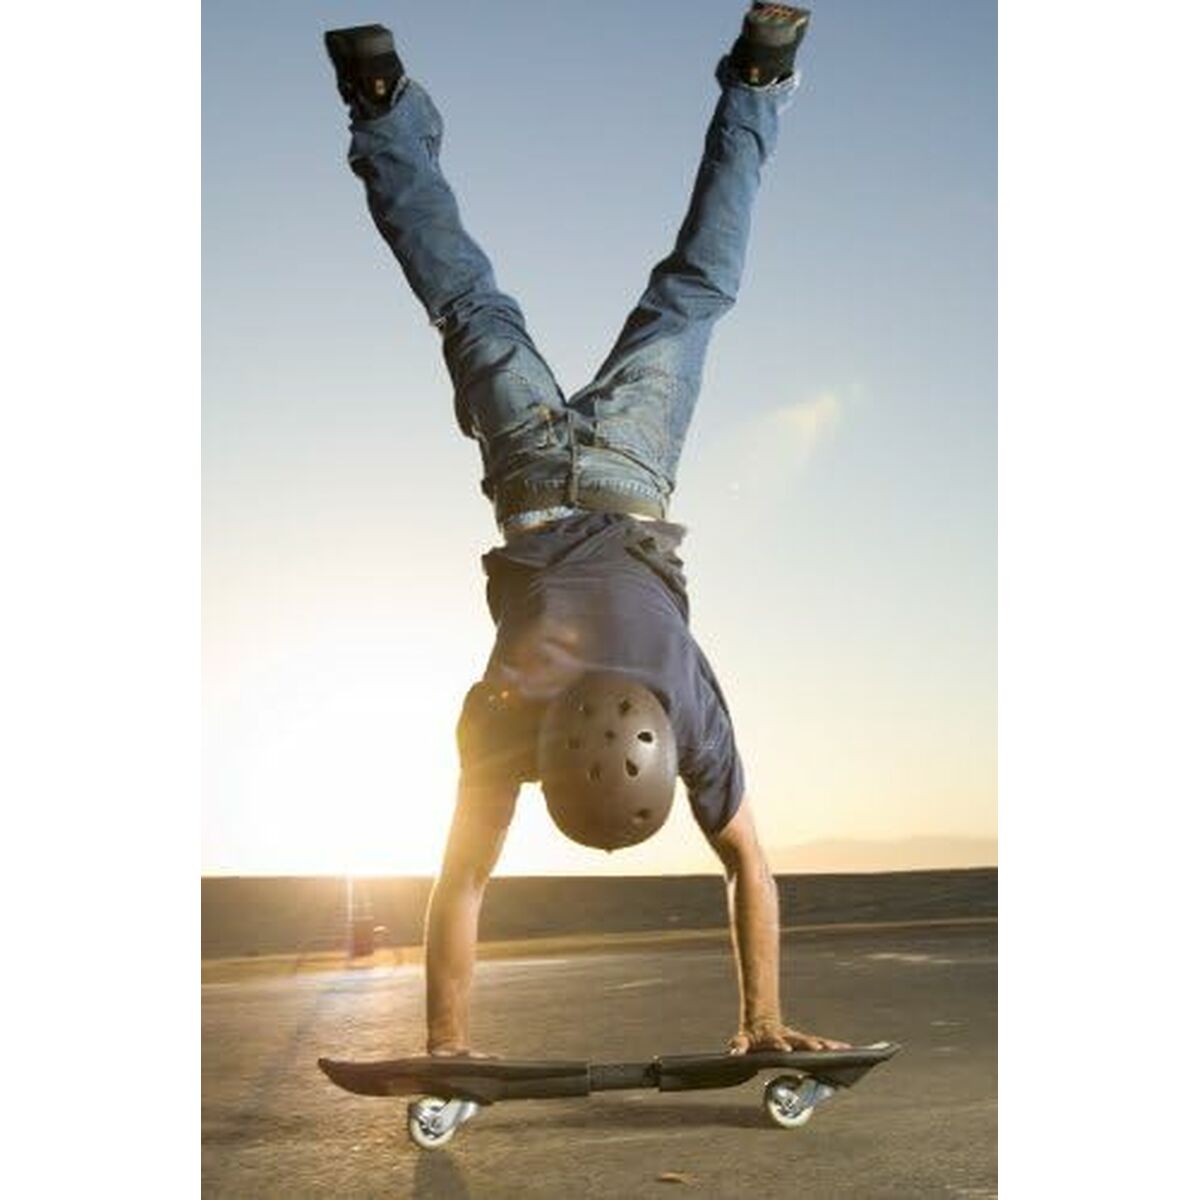 Skateboard Razor 15055412 Nero 2,5 cm